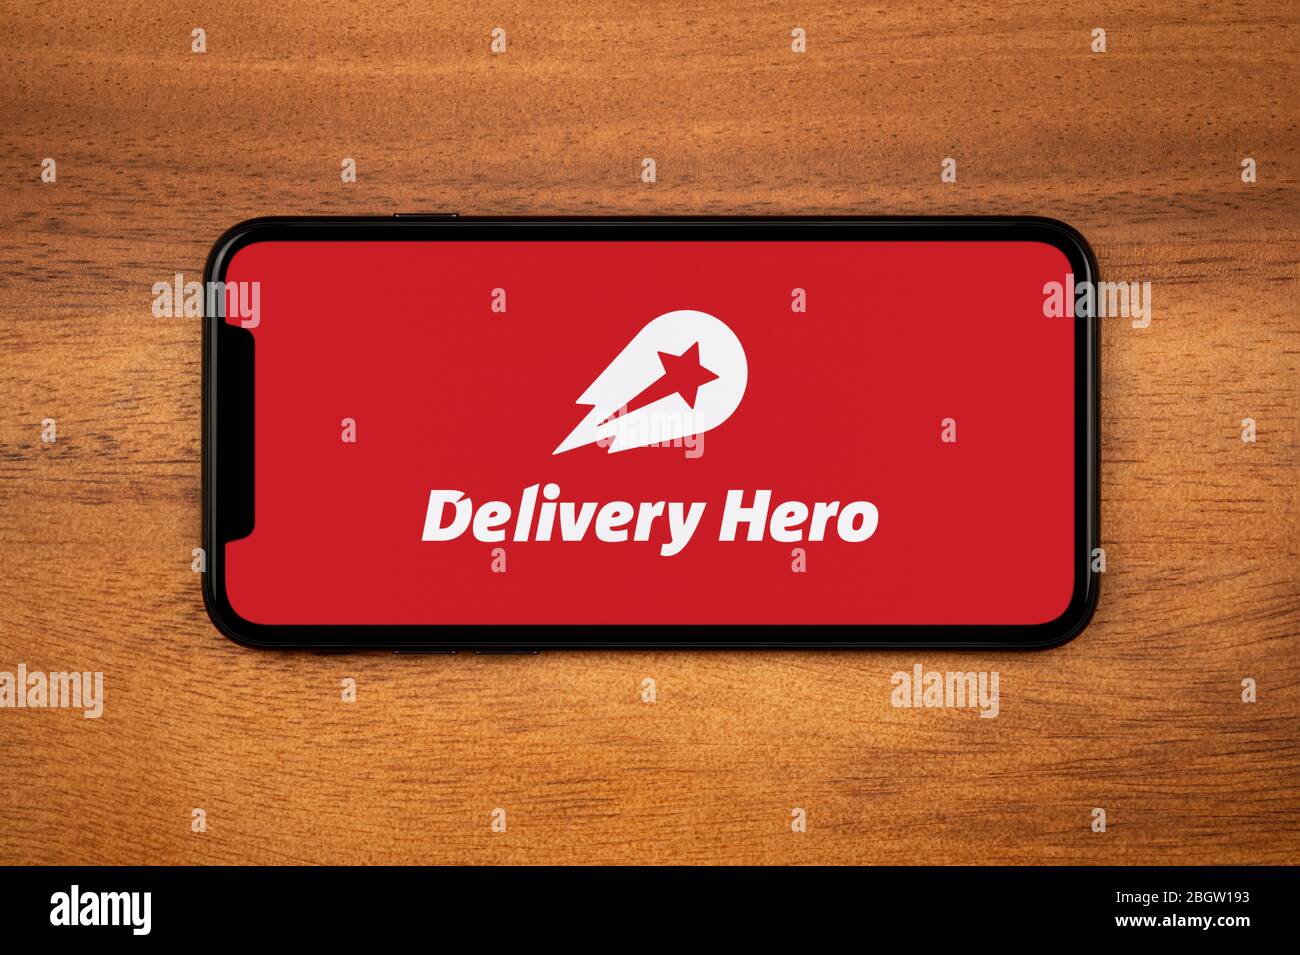 Un smartphone affichant le logo Delivery Hero repose sur une table en bois ordinaire (usage éditorial uniquement). Banque D'Images